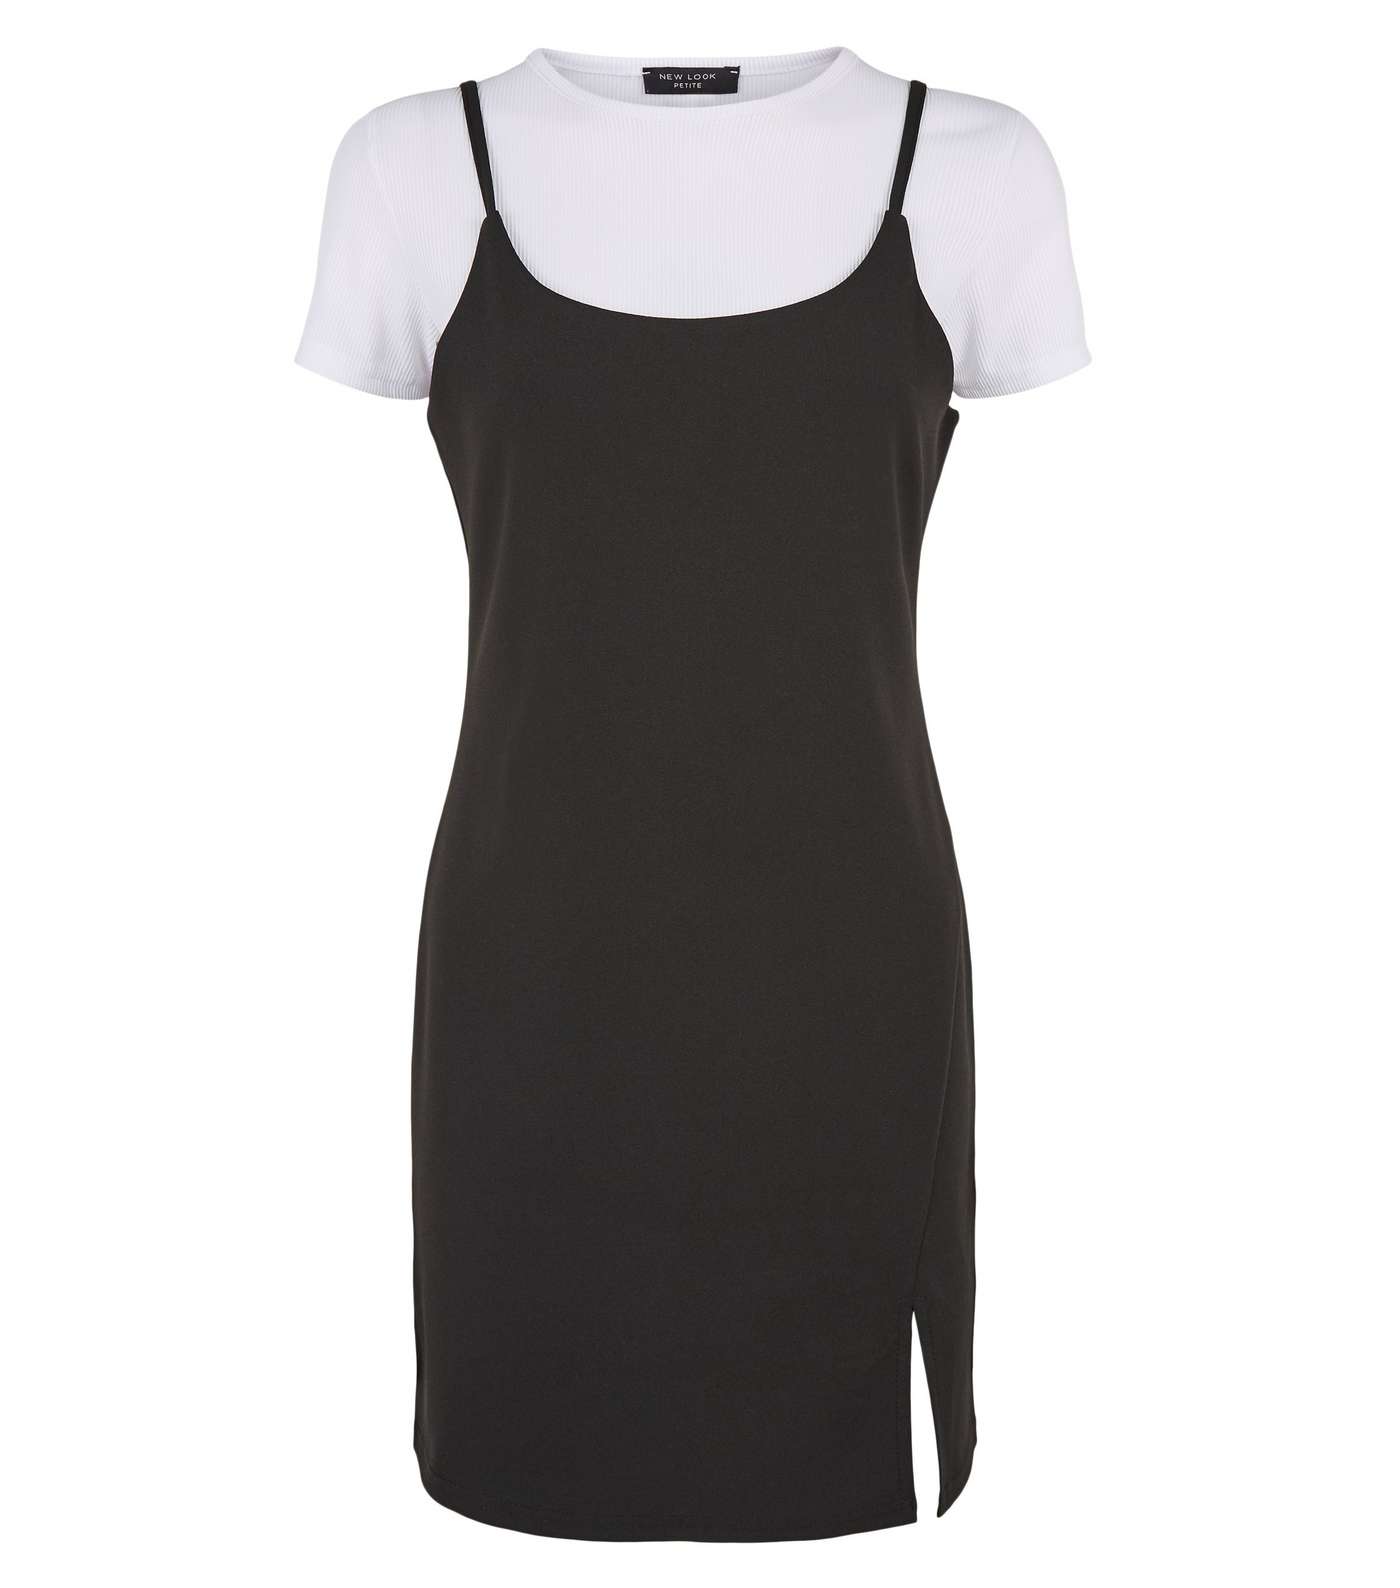 Petite Black 2 in 1 Slip Dress Image 4